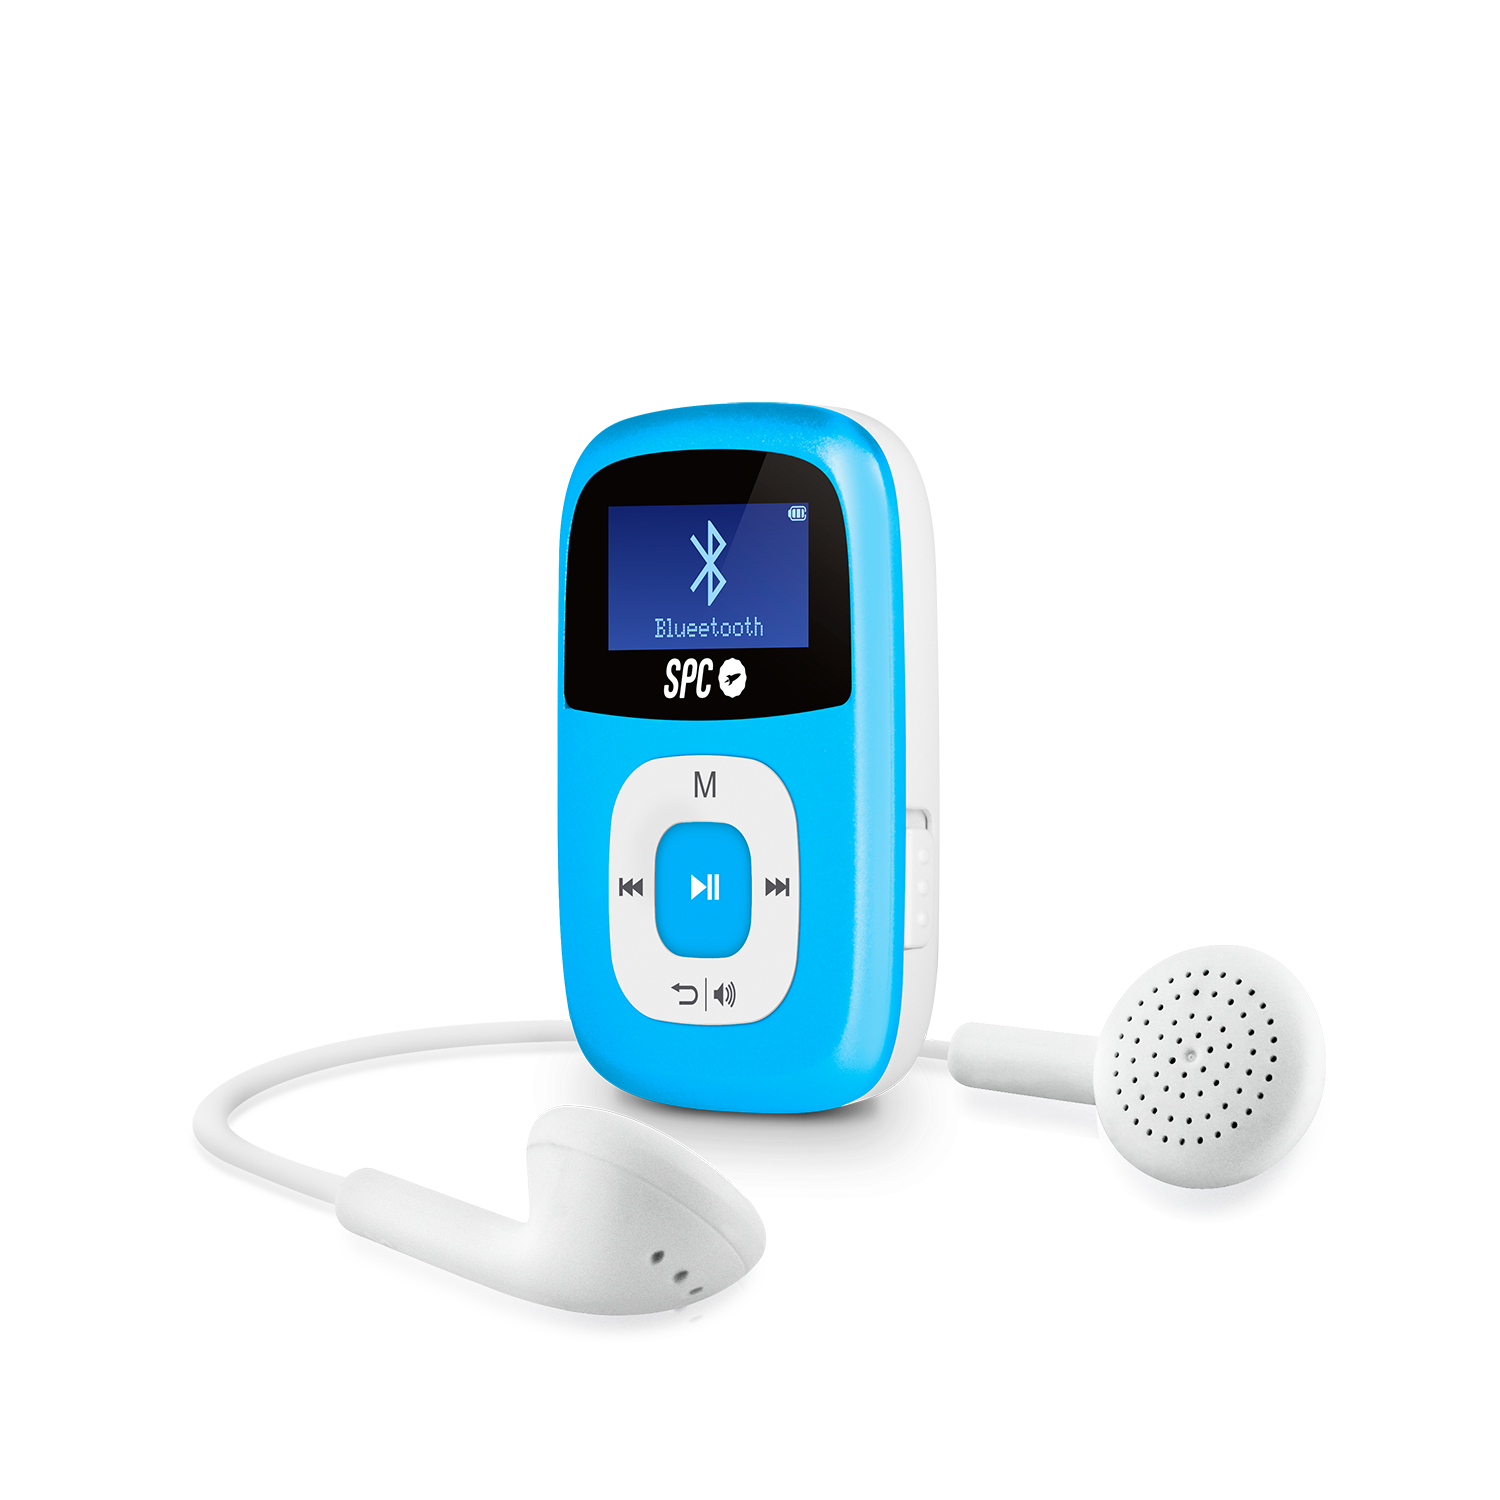 Compre Bt868 Digital Bluetooth Mp3 Música Auriculares Con Radio Fm  Incorporada y Auriculares Bluetooth Inalámbricos de China por 3.16 USD